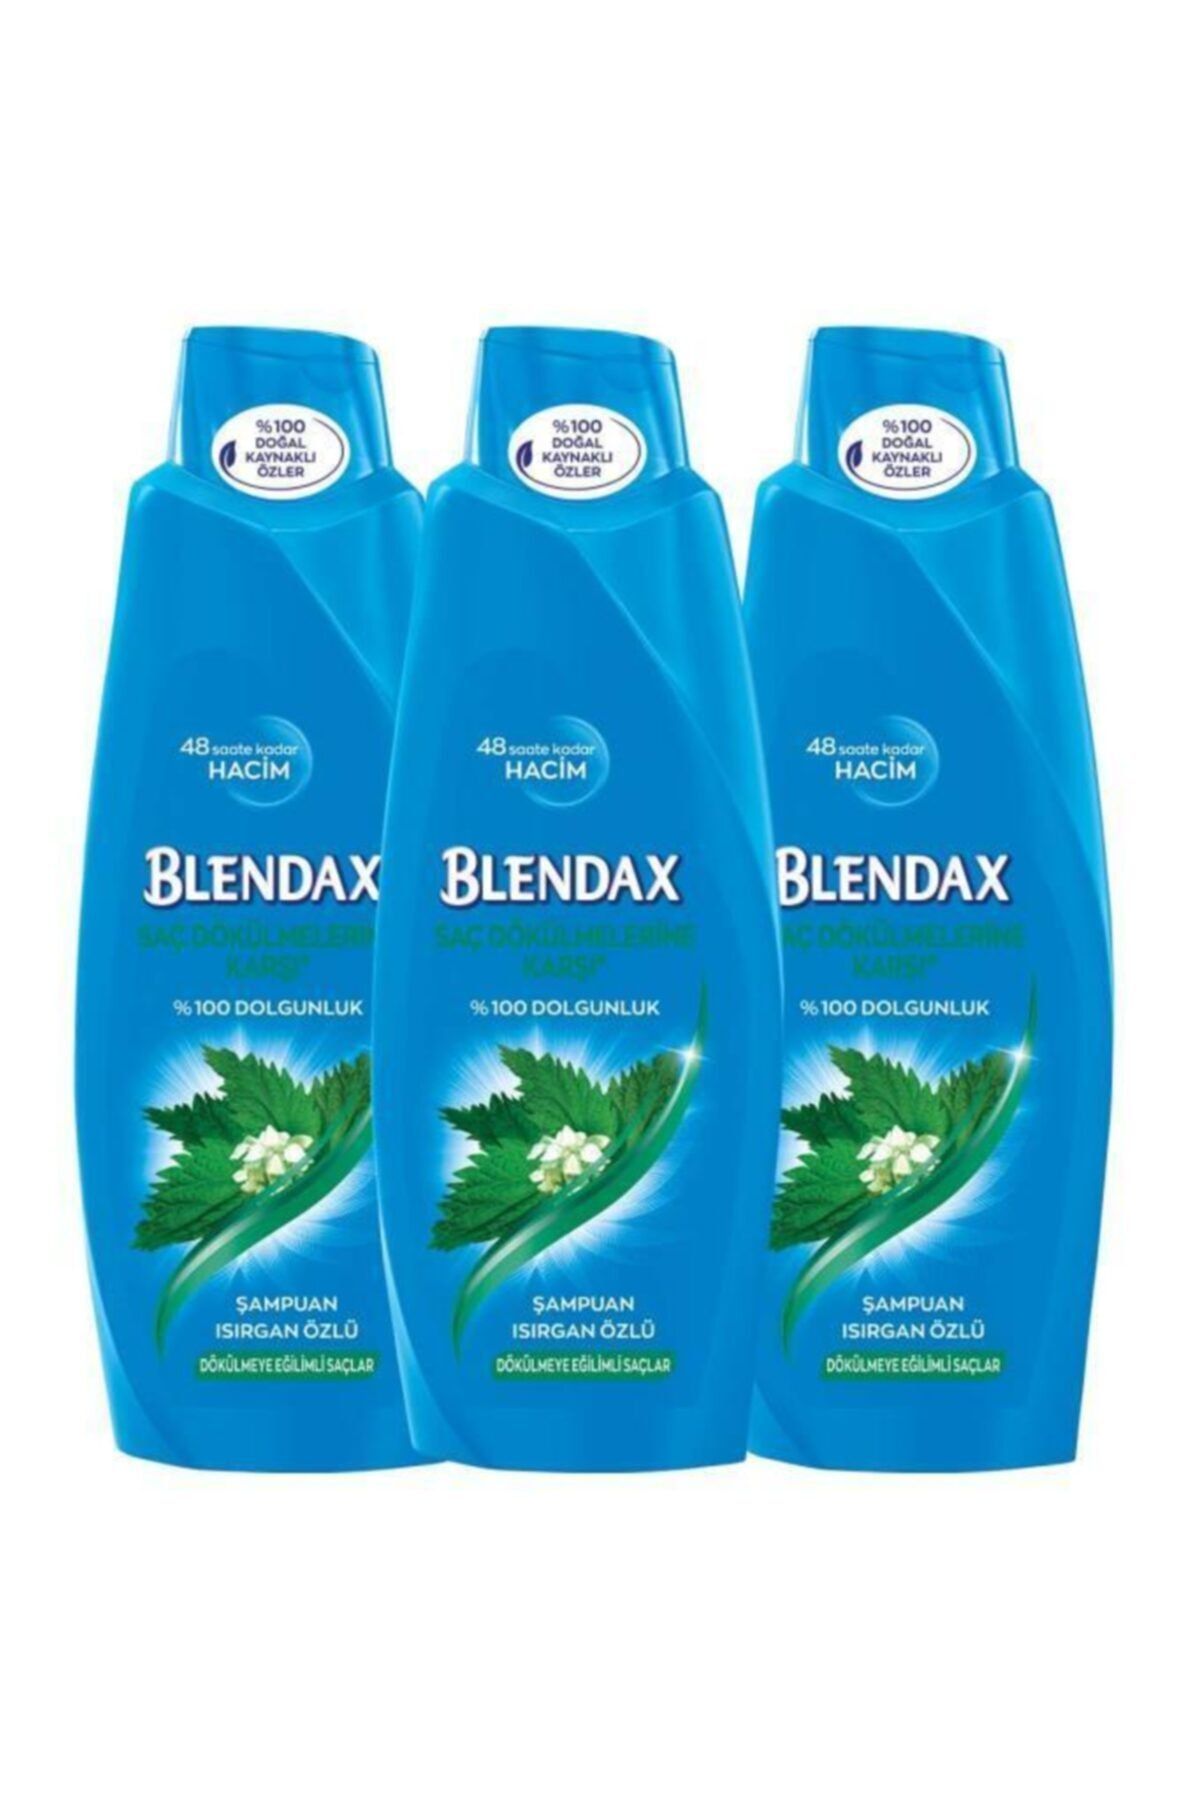 Blendax Saç Dökülmelerine Karşı Isırgan Özlü Şampuan 500 Mlx 3 Adet